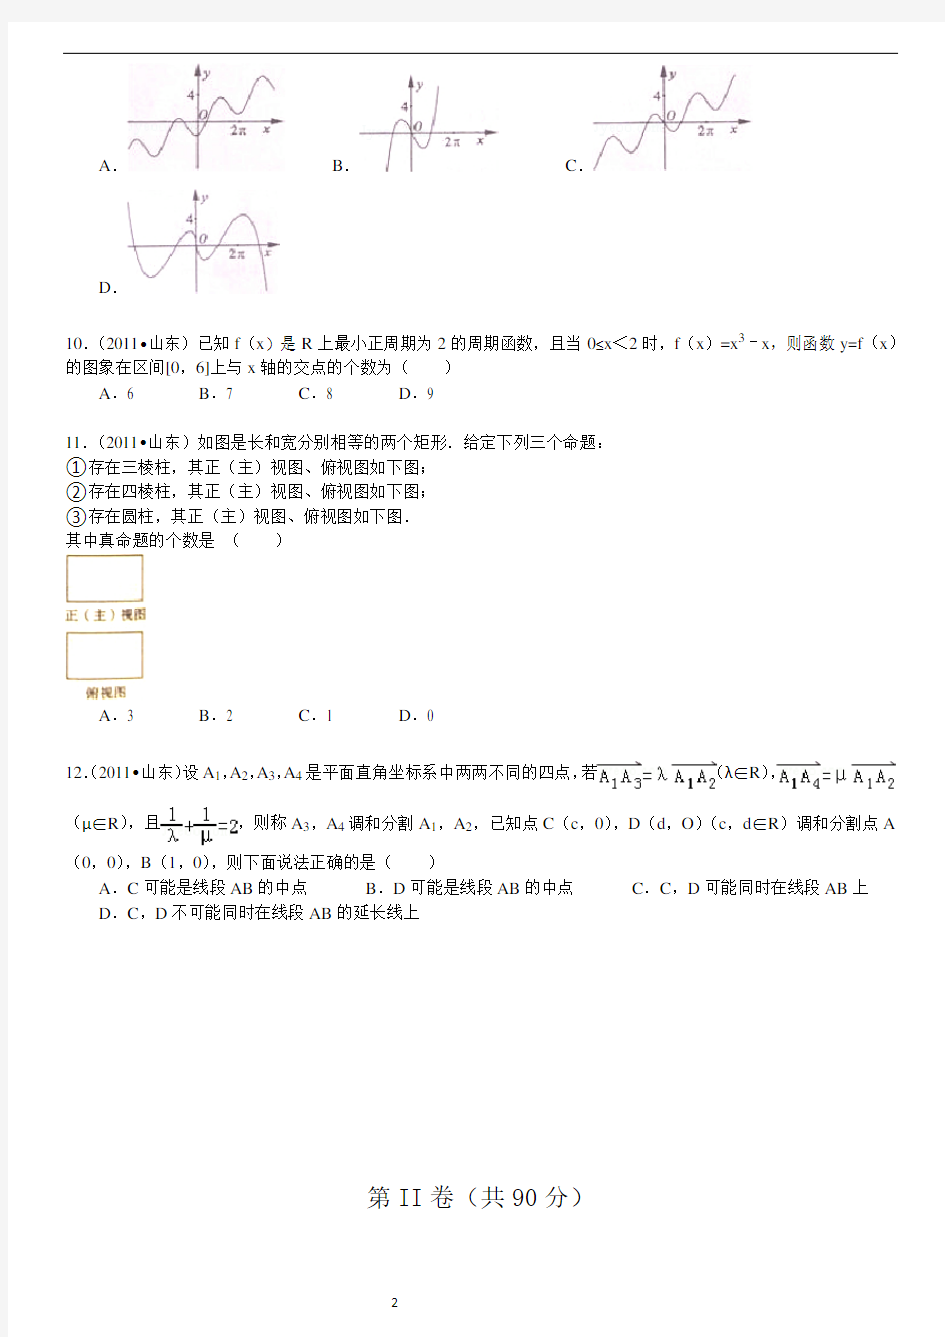 2011年高考理科数学试题及详细答案(山东卷)